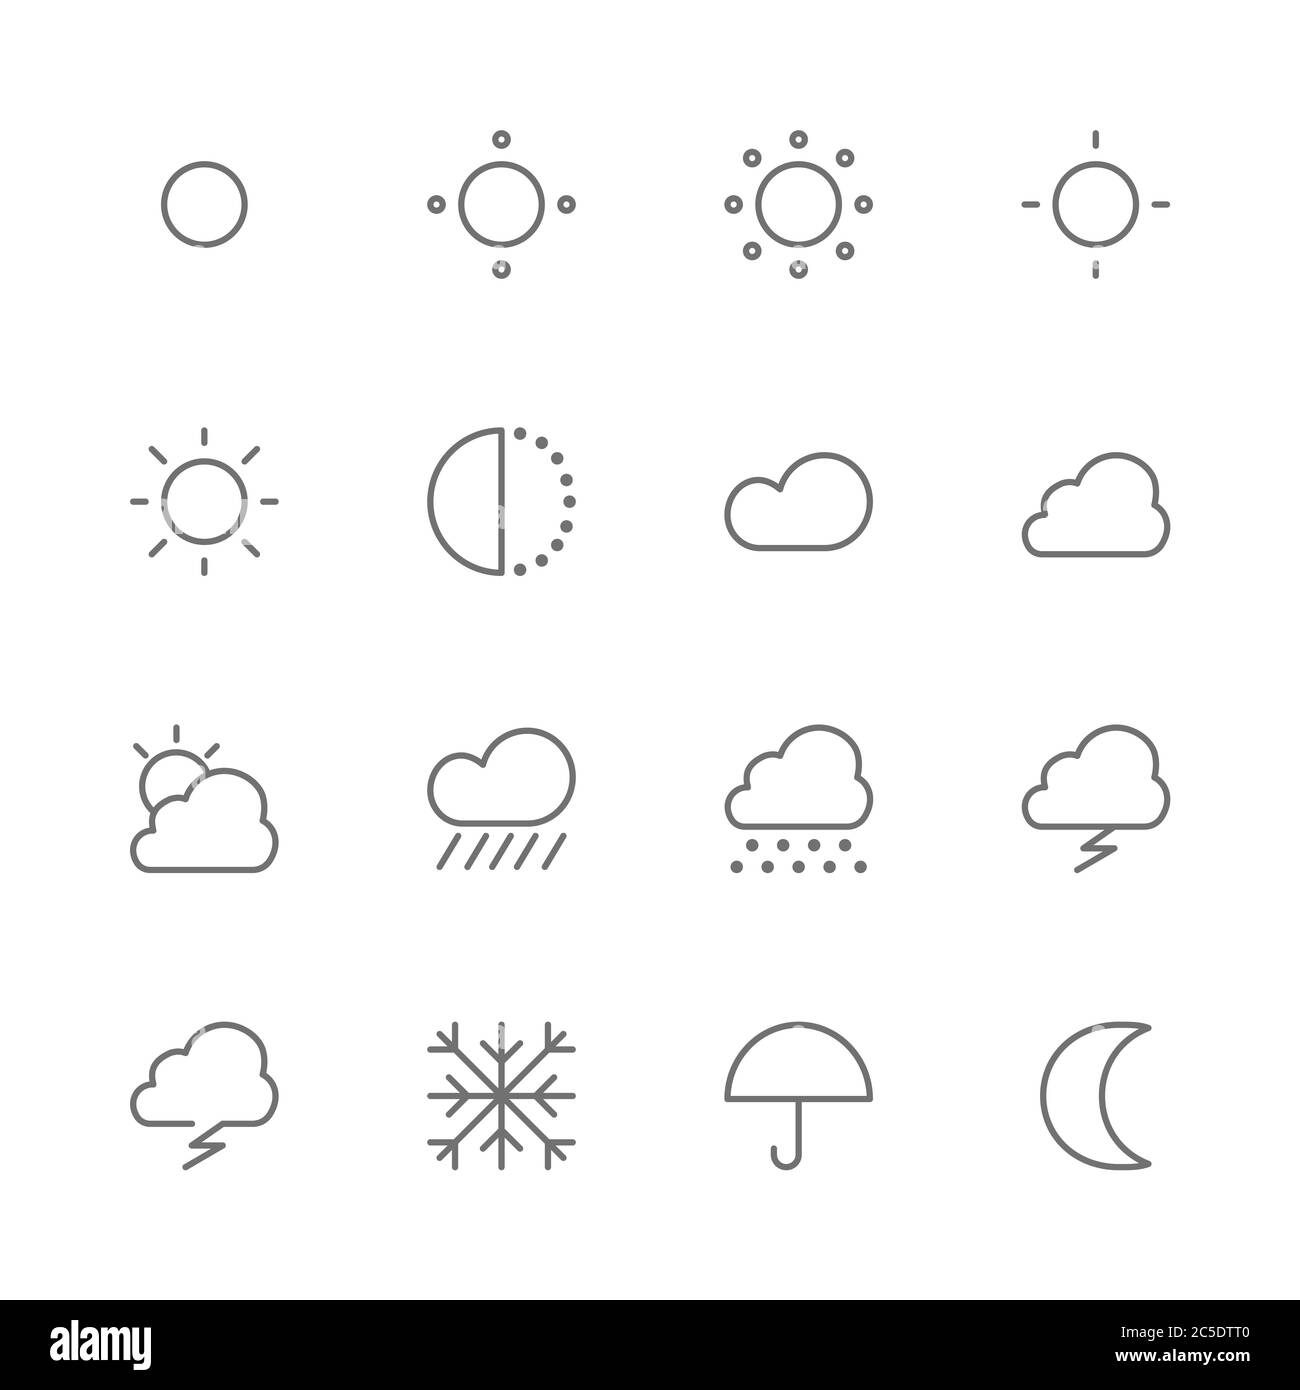 Semplice set di icone a linea sottile del vettore correlate alle previsioni meteo e climatiche. Contiene come piovoso, soleggiato, nevoso, nuvoloso, giorno, notte, caldo, freddo, sole, m. Illustrazione Vettoriale